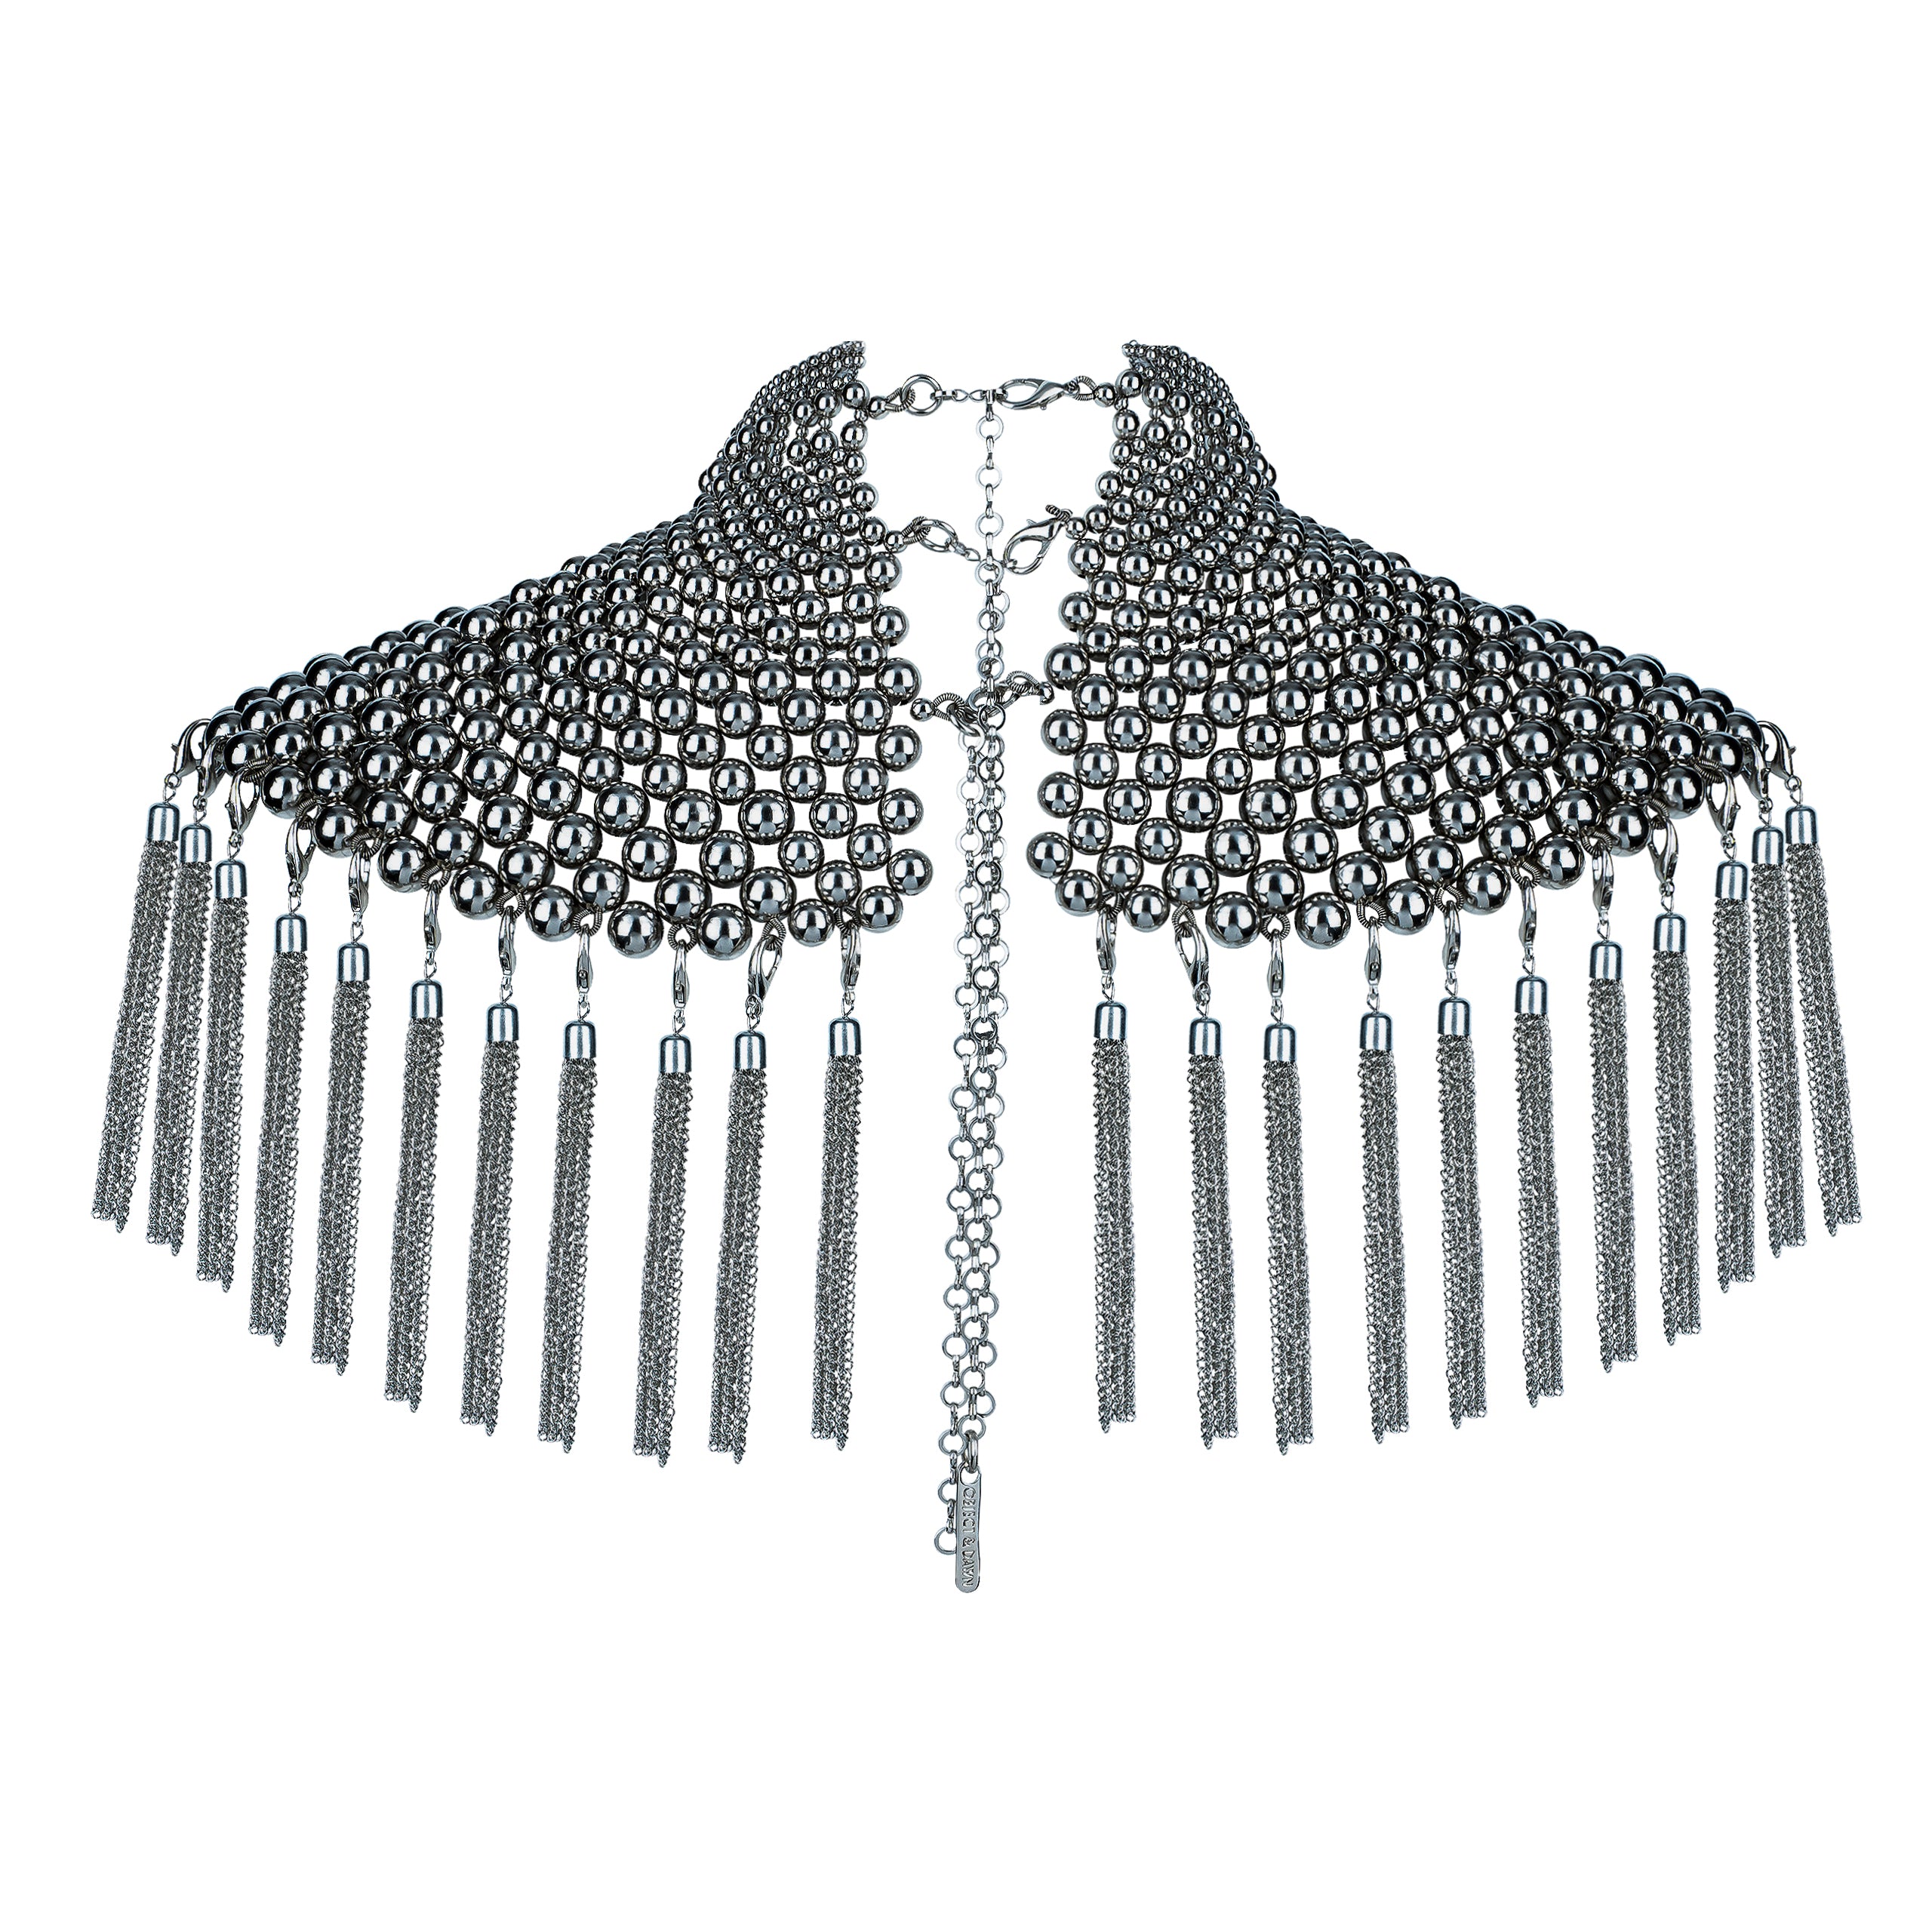 Namaka Modular Necklace in Silver